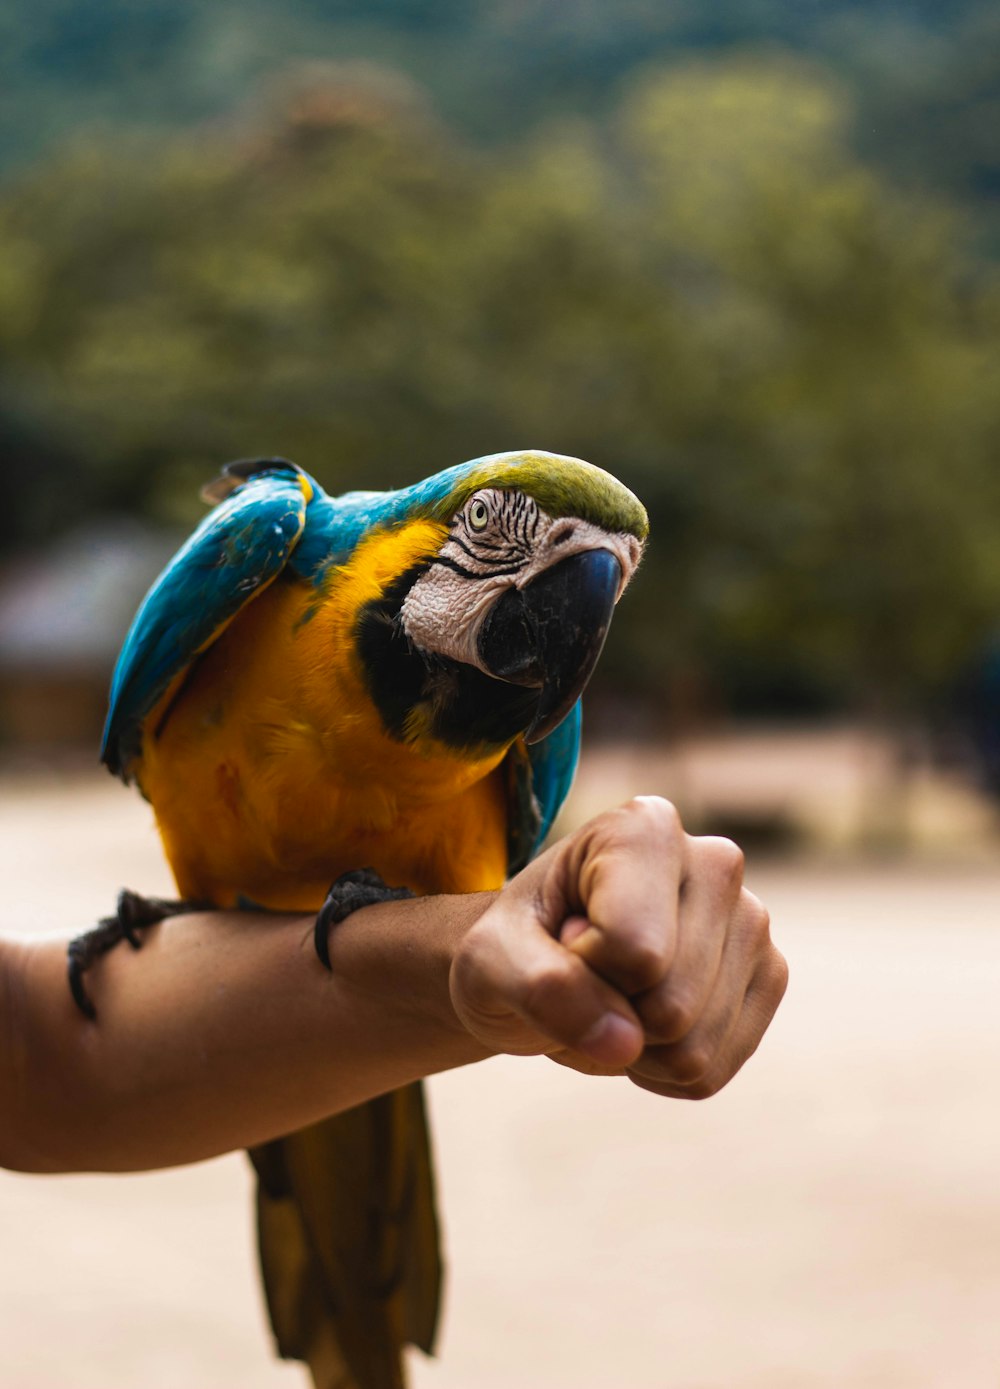 オレンジ、青、緑のコンゴウインコの鳥が人の手にとまっています